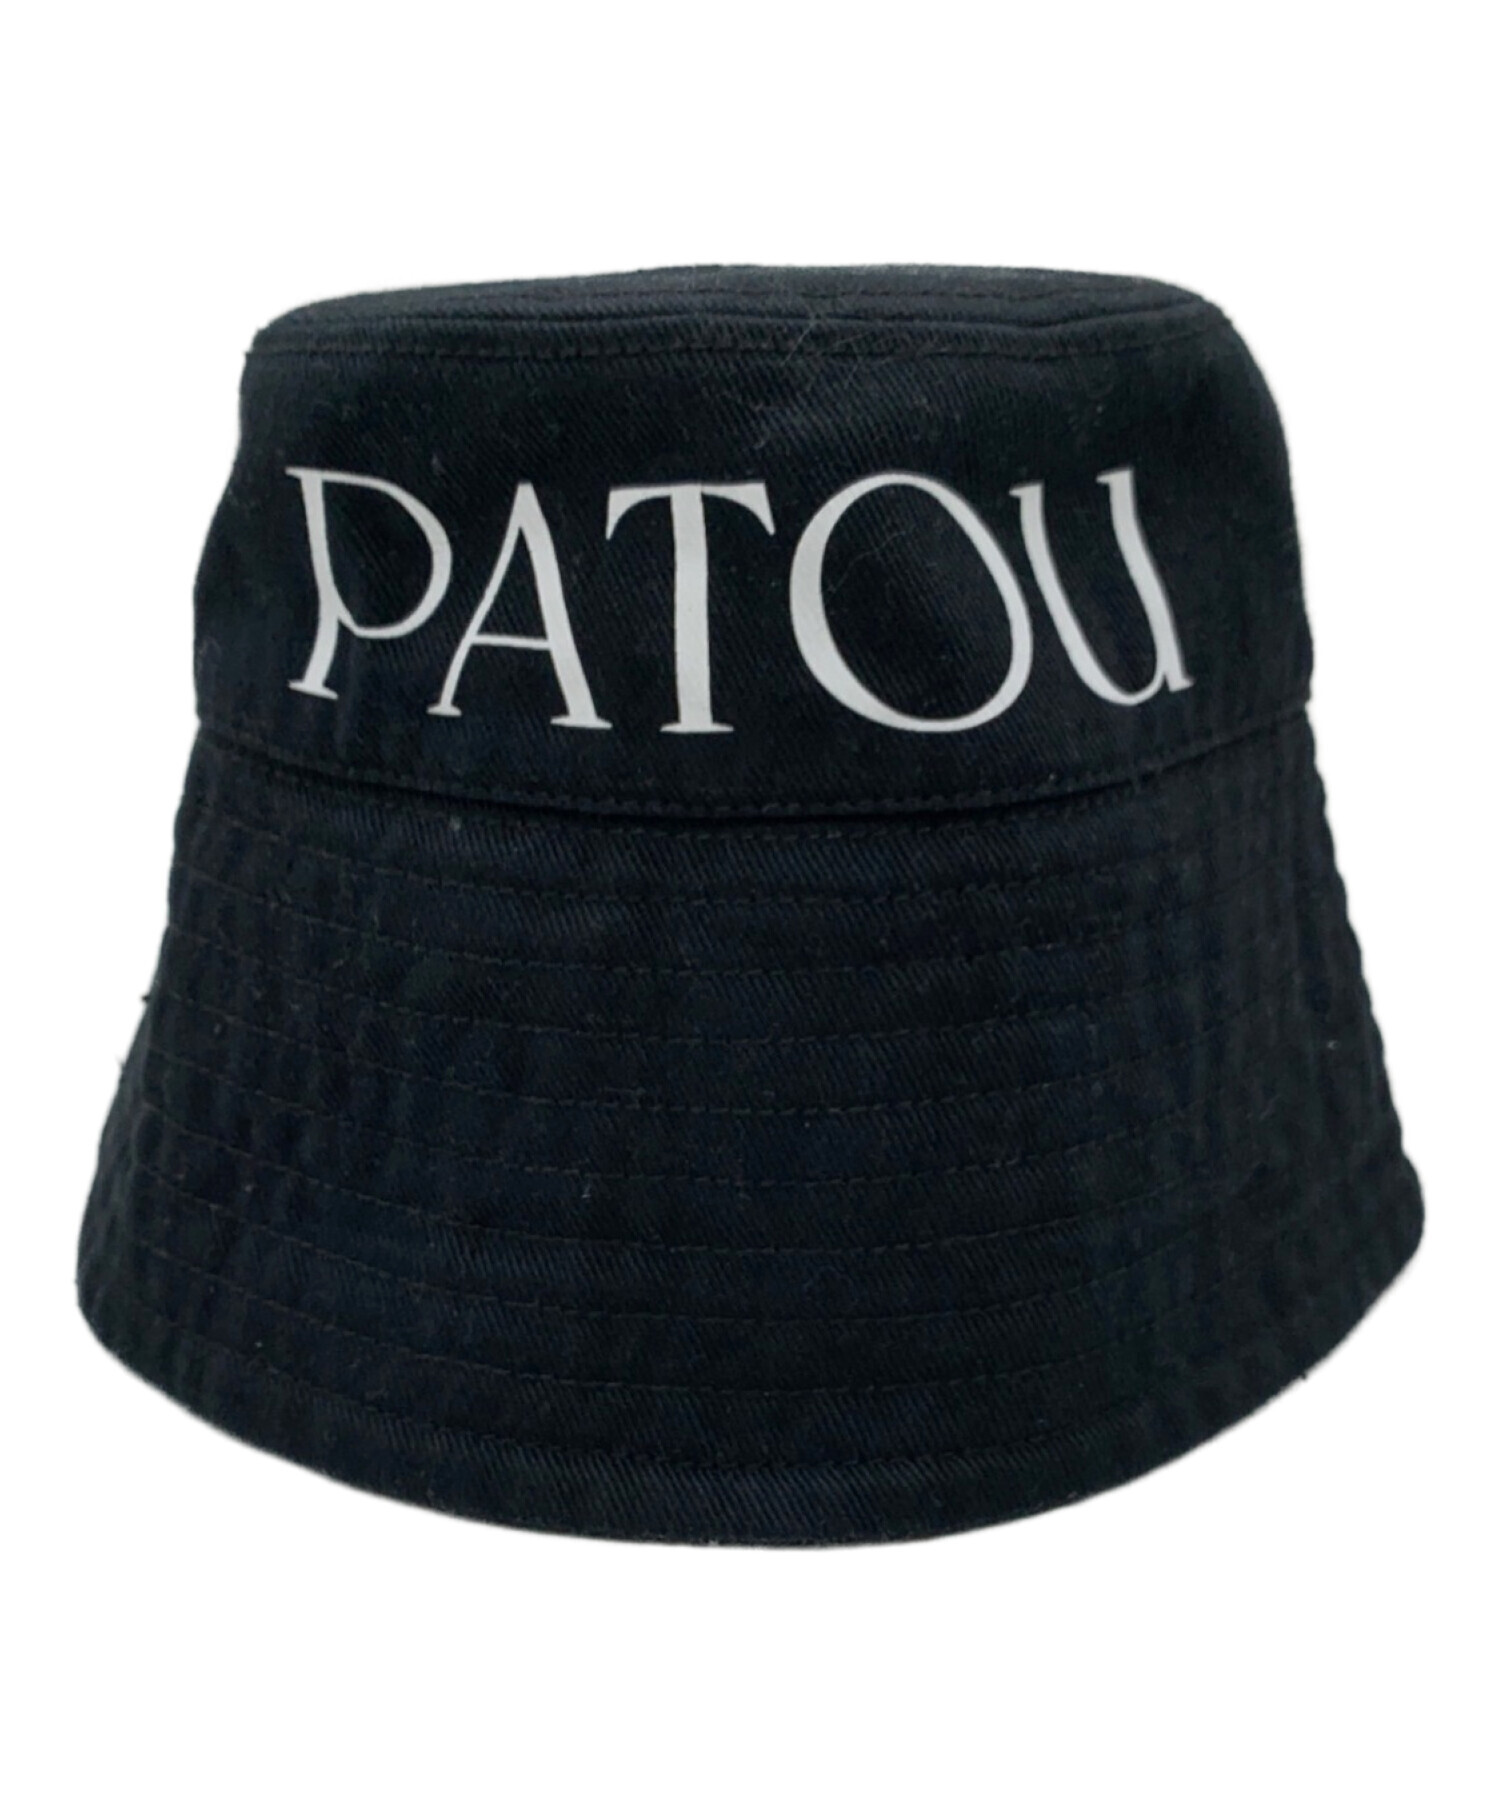 Patou (パトゥ) ハット ブラック サイズ:ML